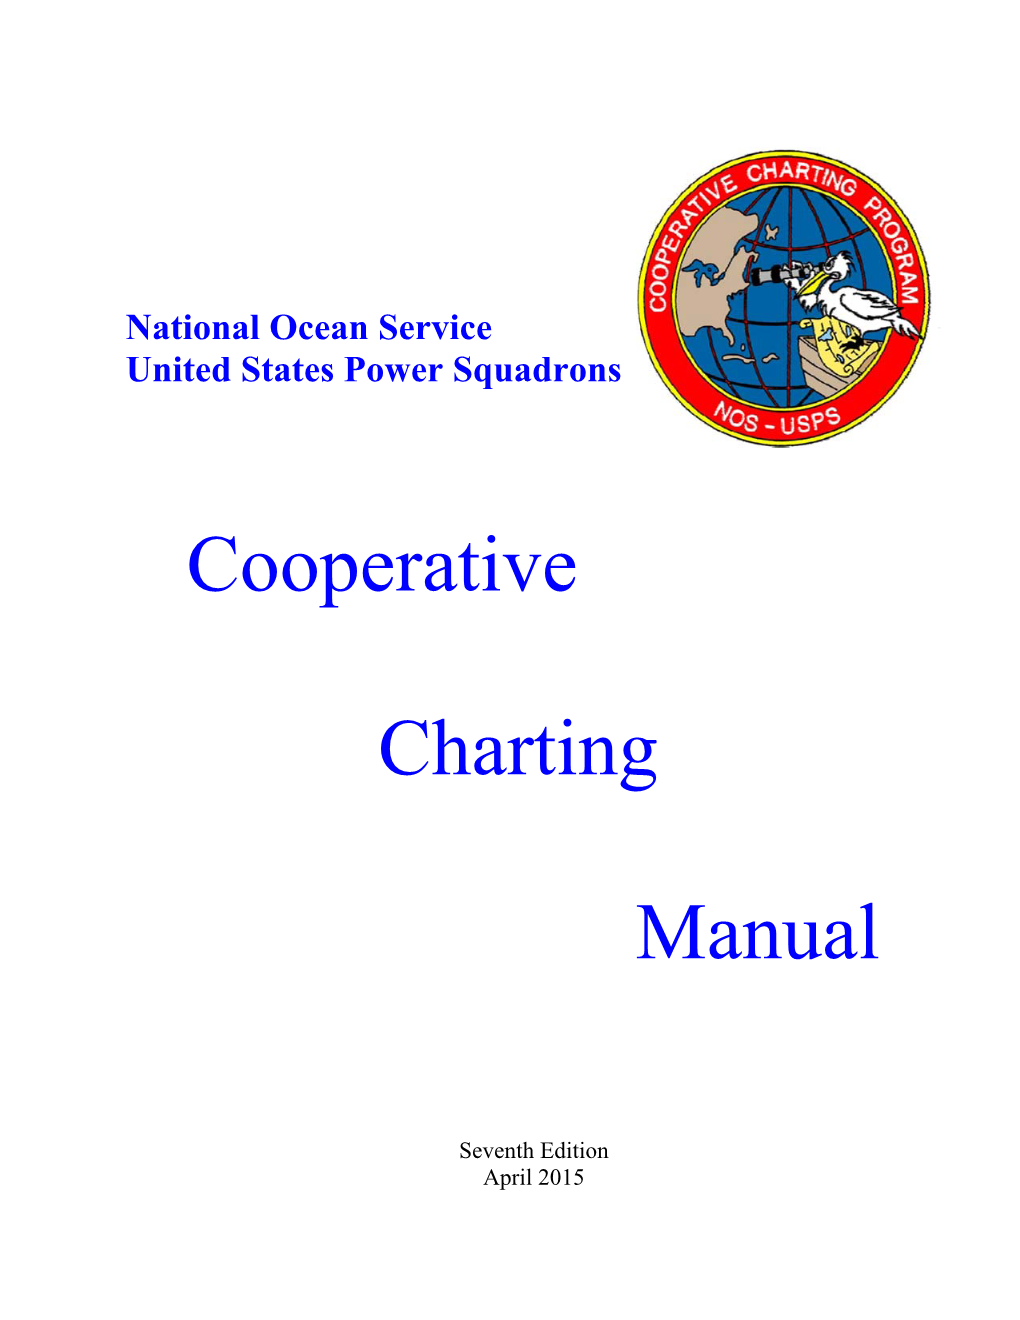 Cooperative Charting Manual April 2015